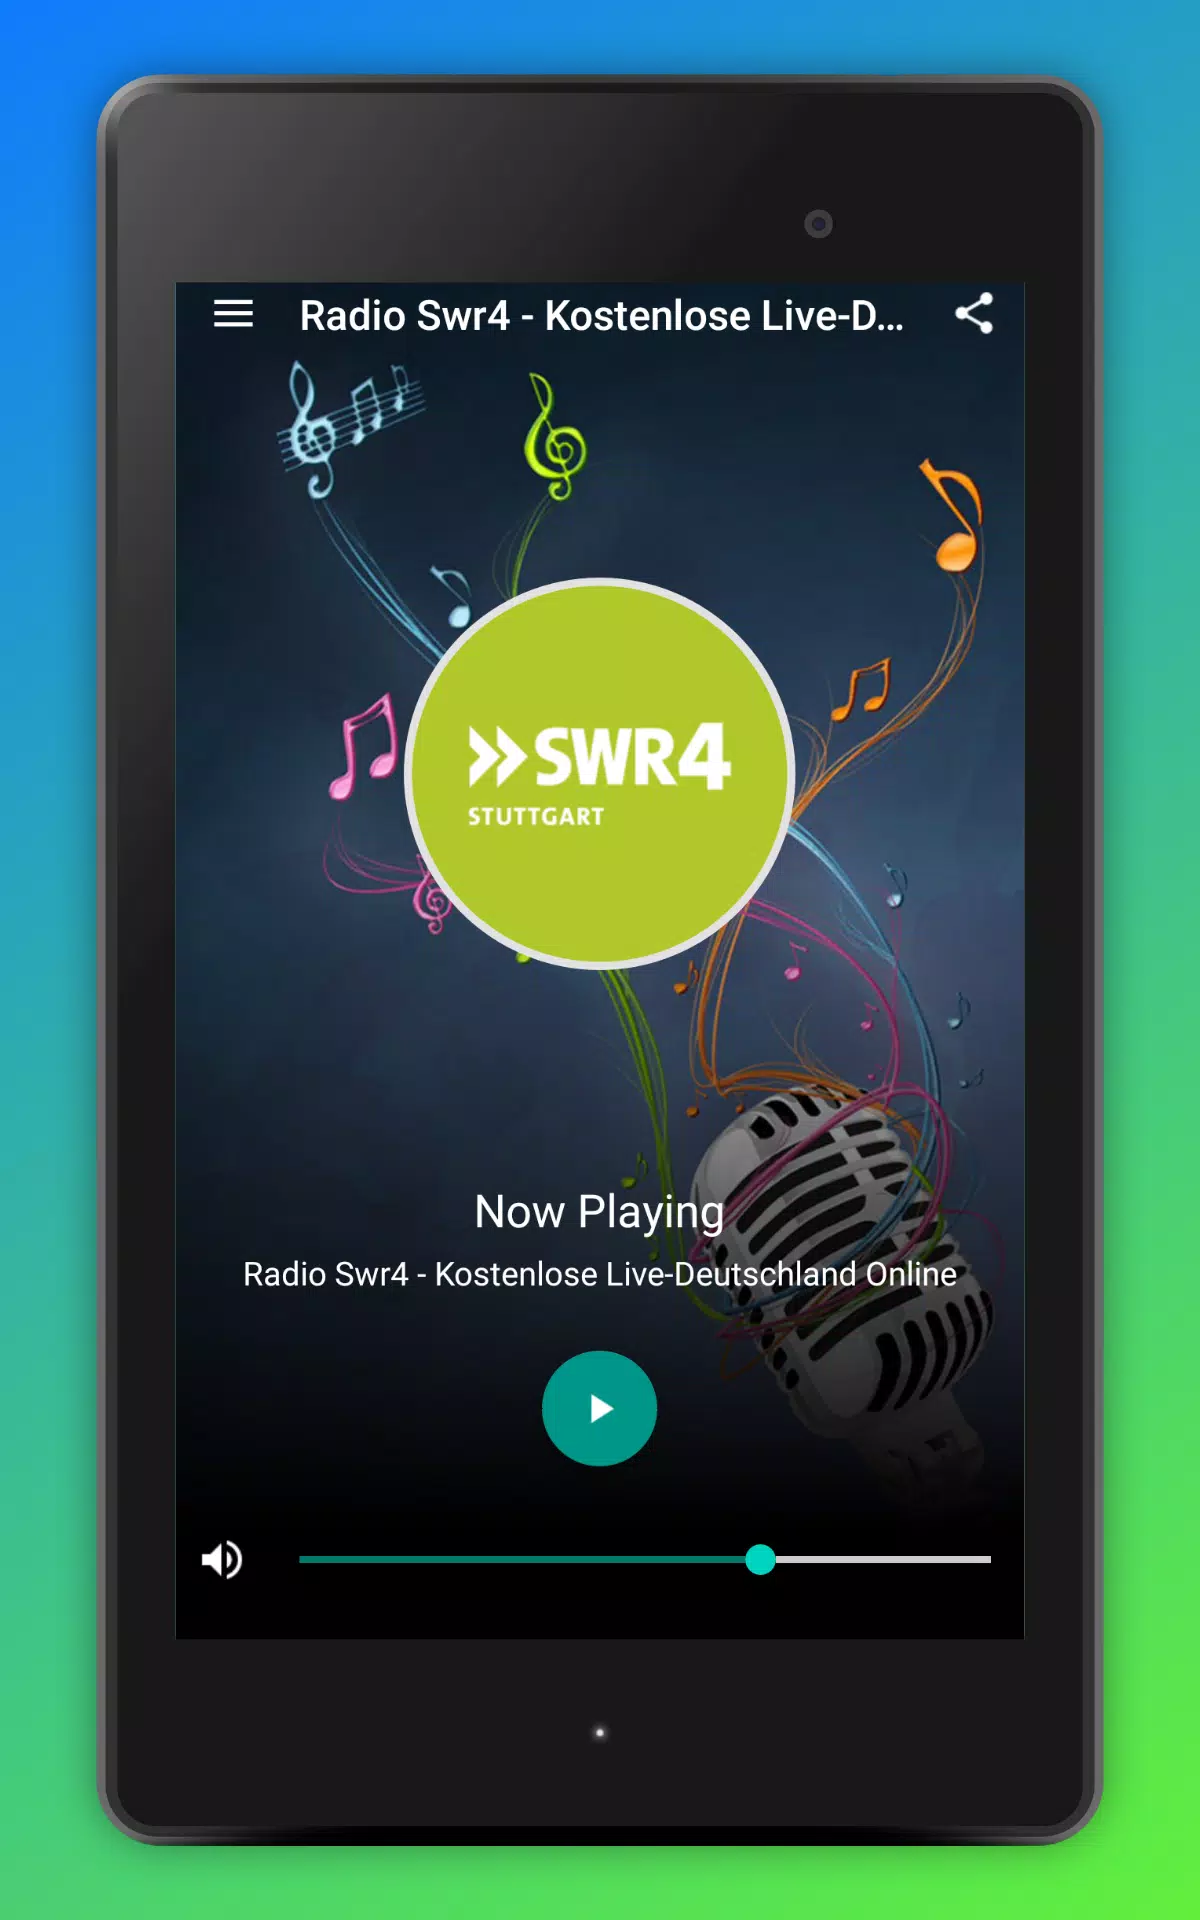 Radio Swr4 - Kostenlose Live-Deutschland Online for Android - APK Download